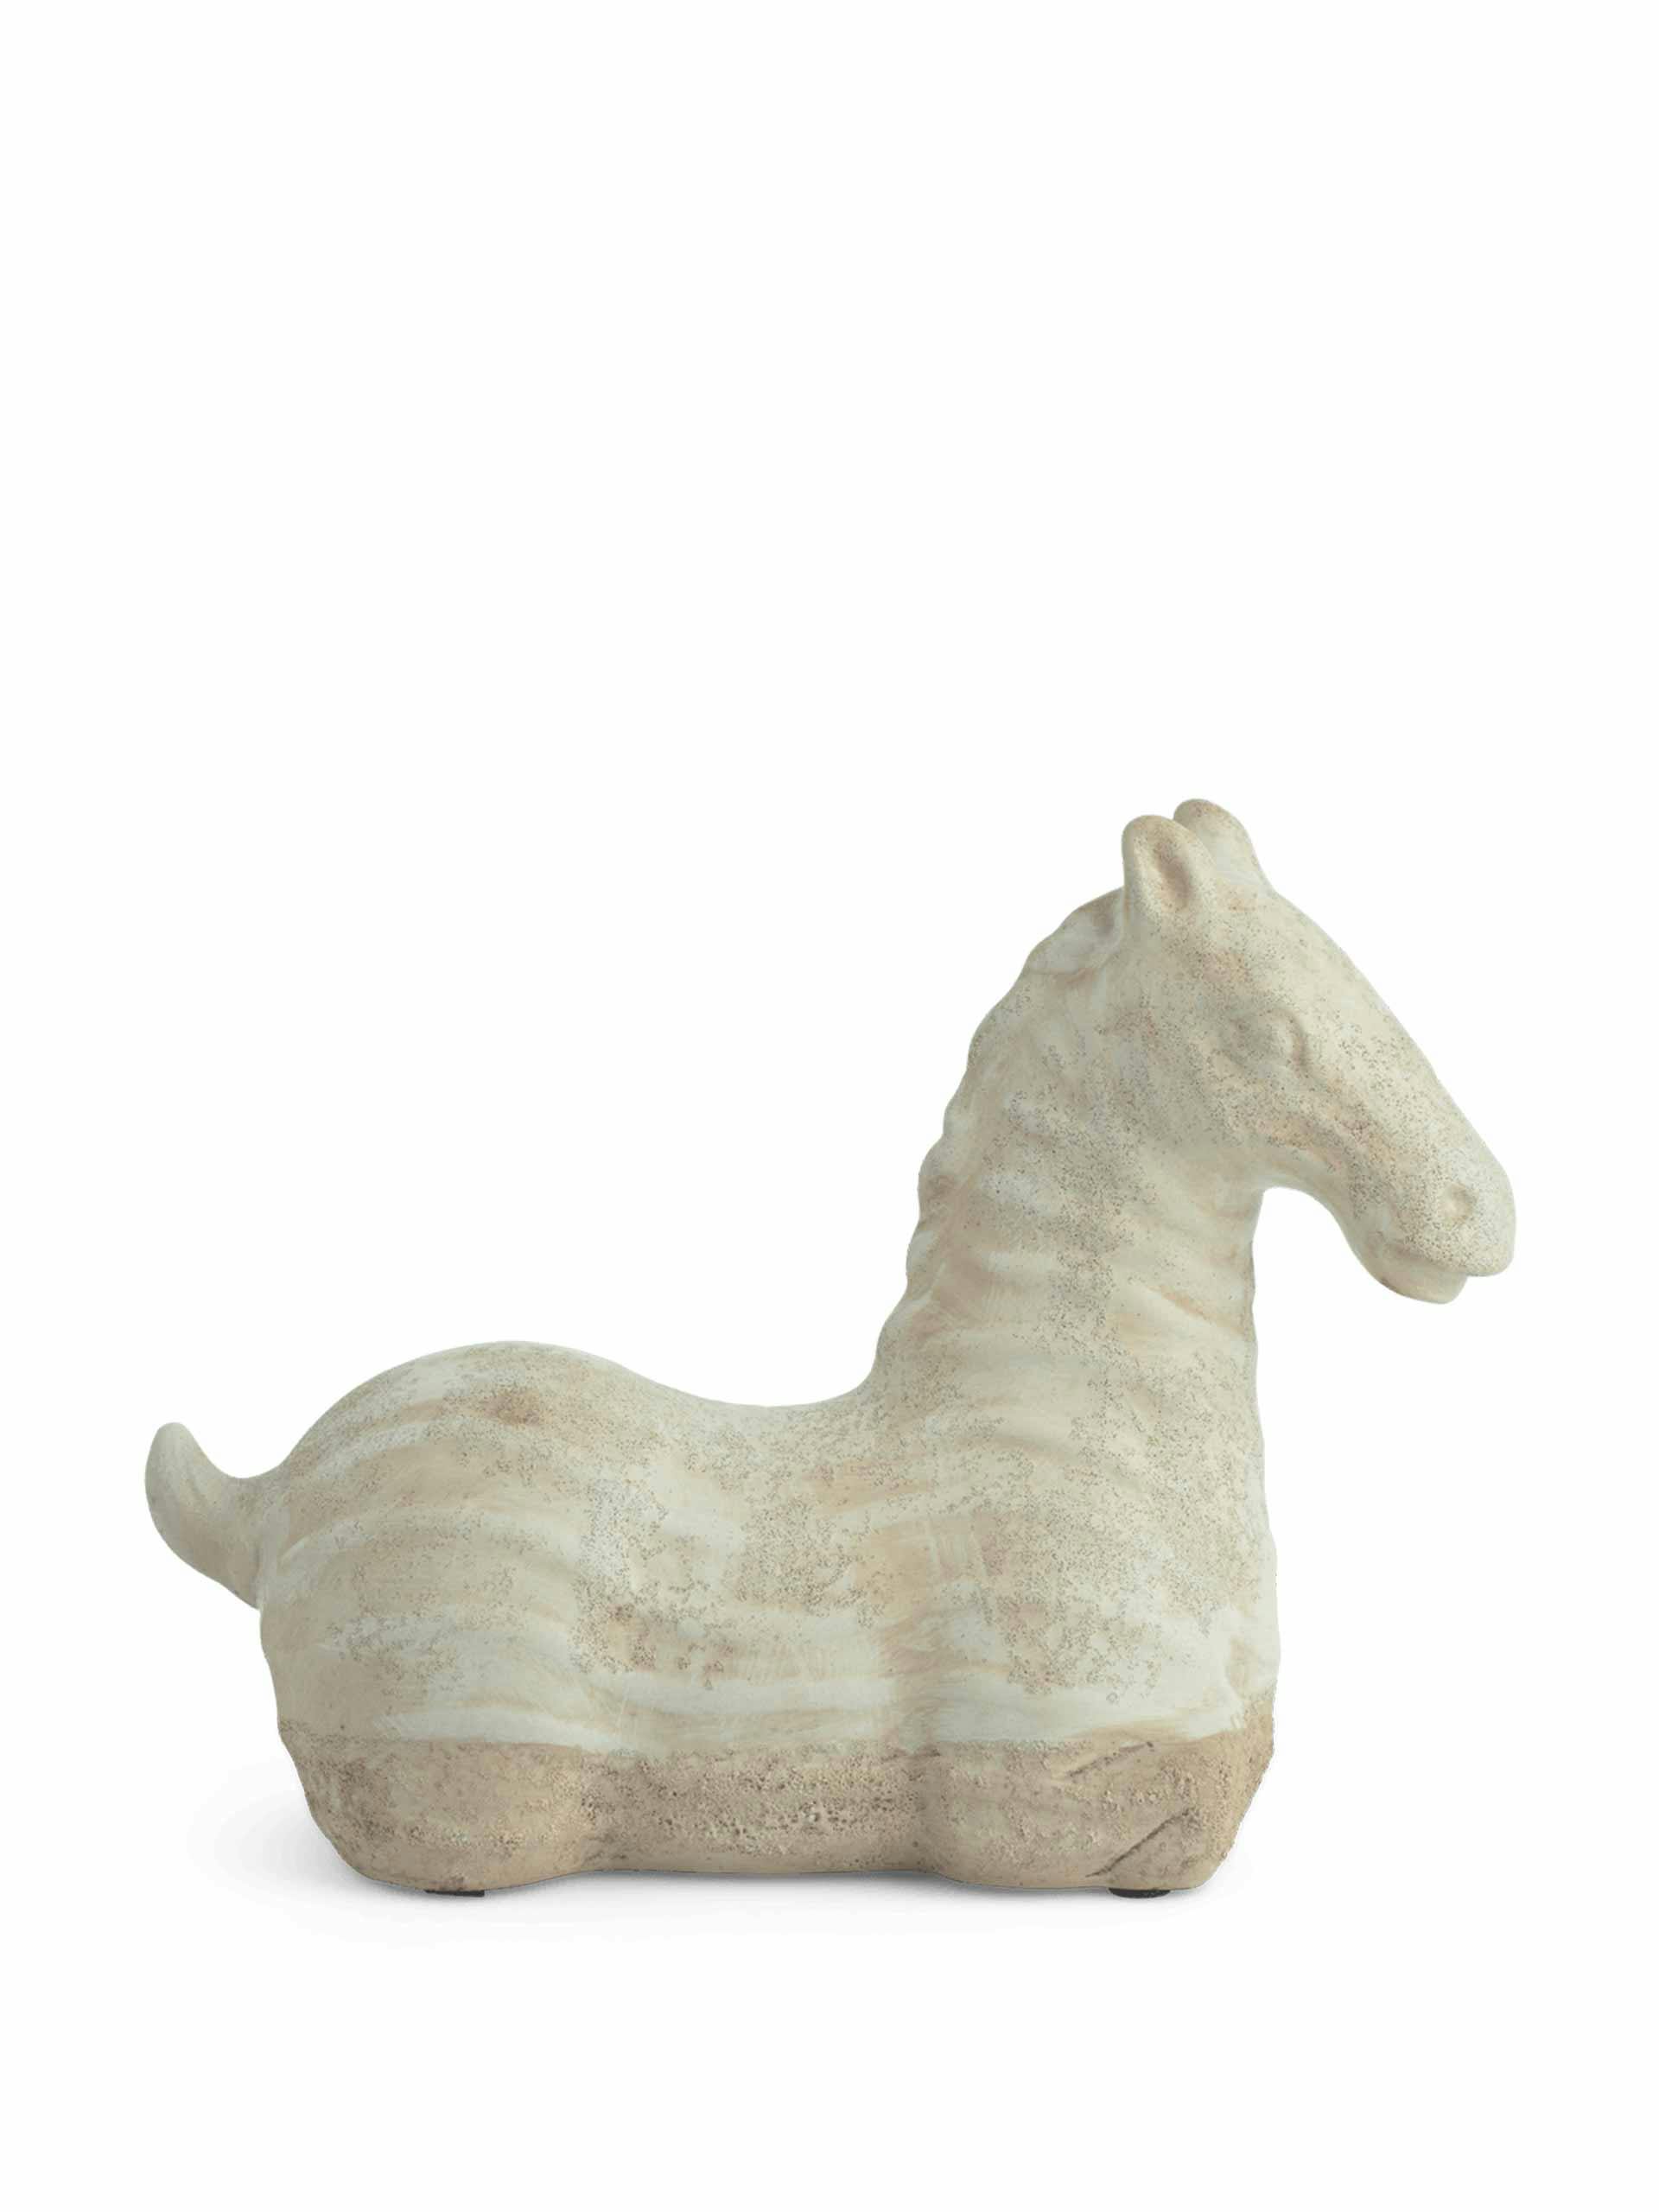 Small hickstead horse ornament